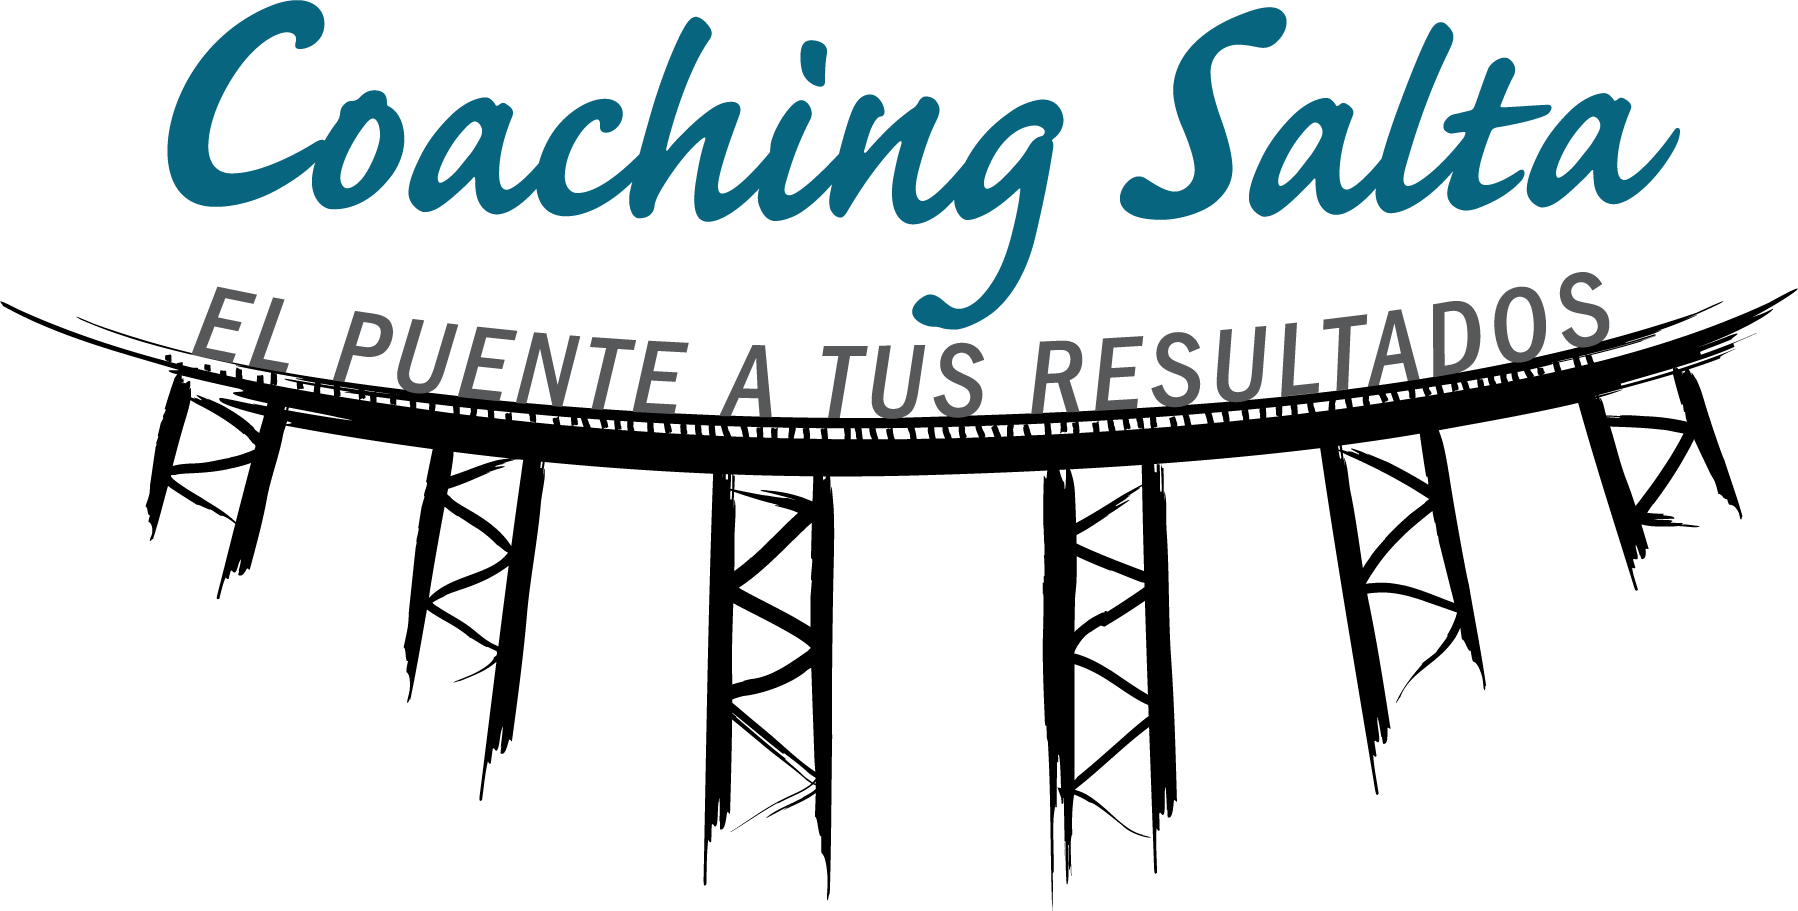 Coaching Salta